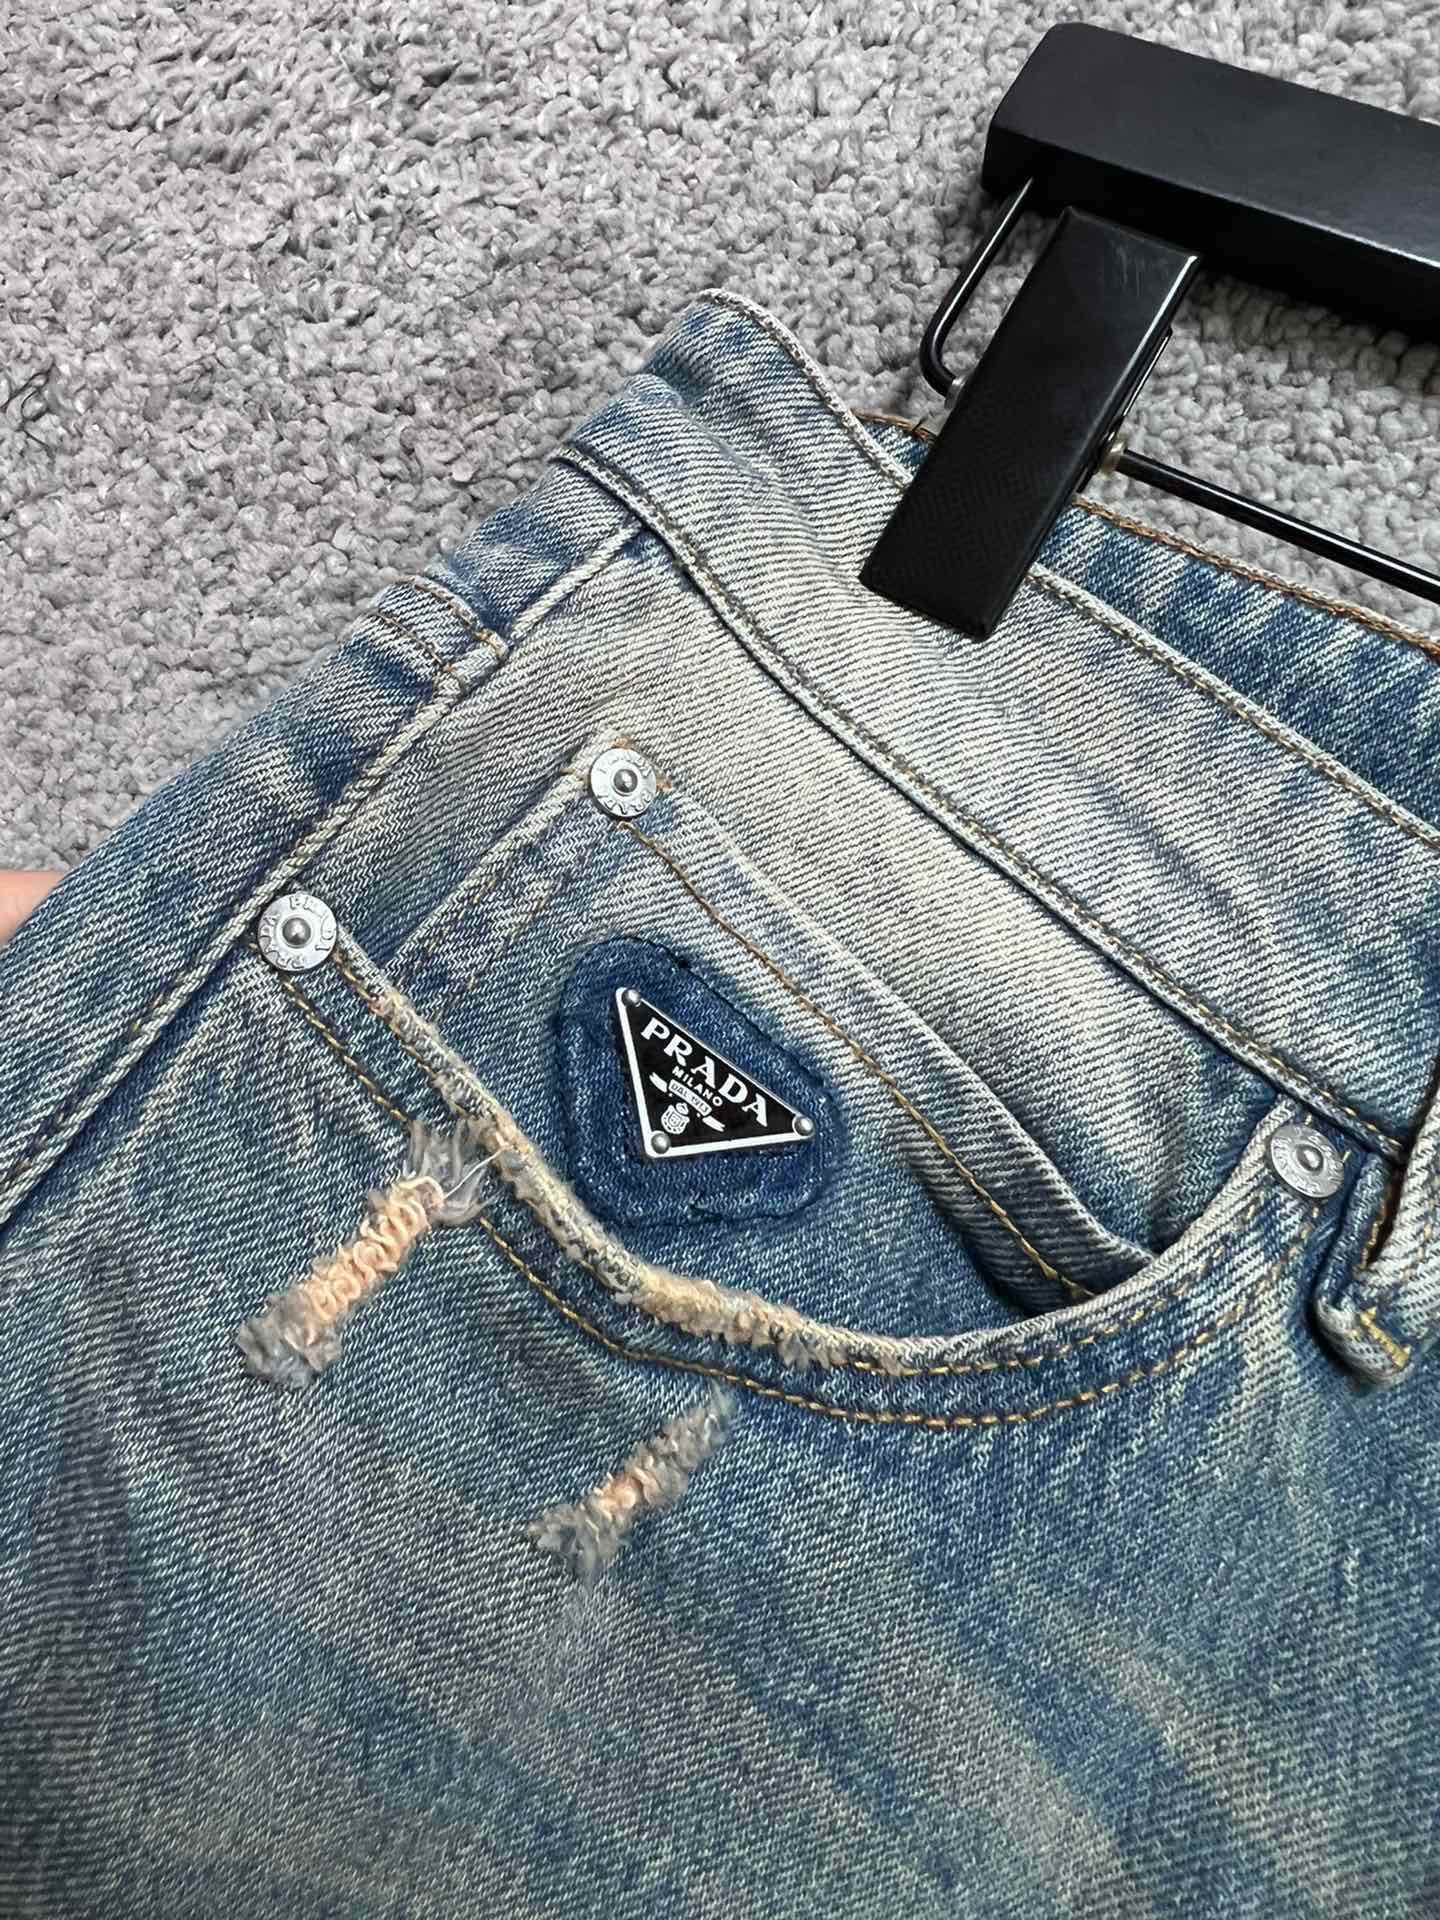 P家新款牛仔裤高端品质面料带弹力独特的洗水颜色潮流必备单品时尚百搭码数:30313233343638